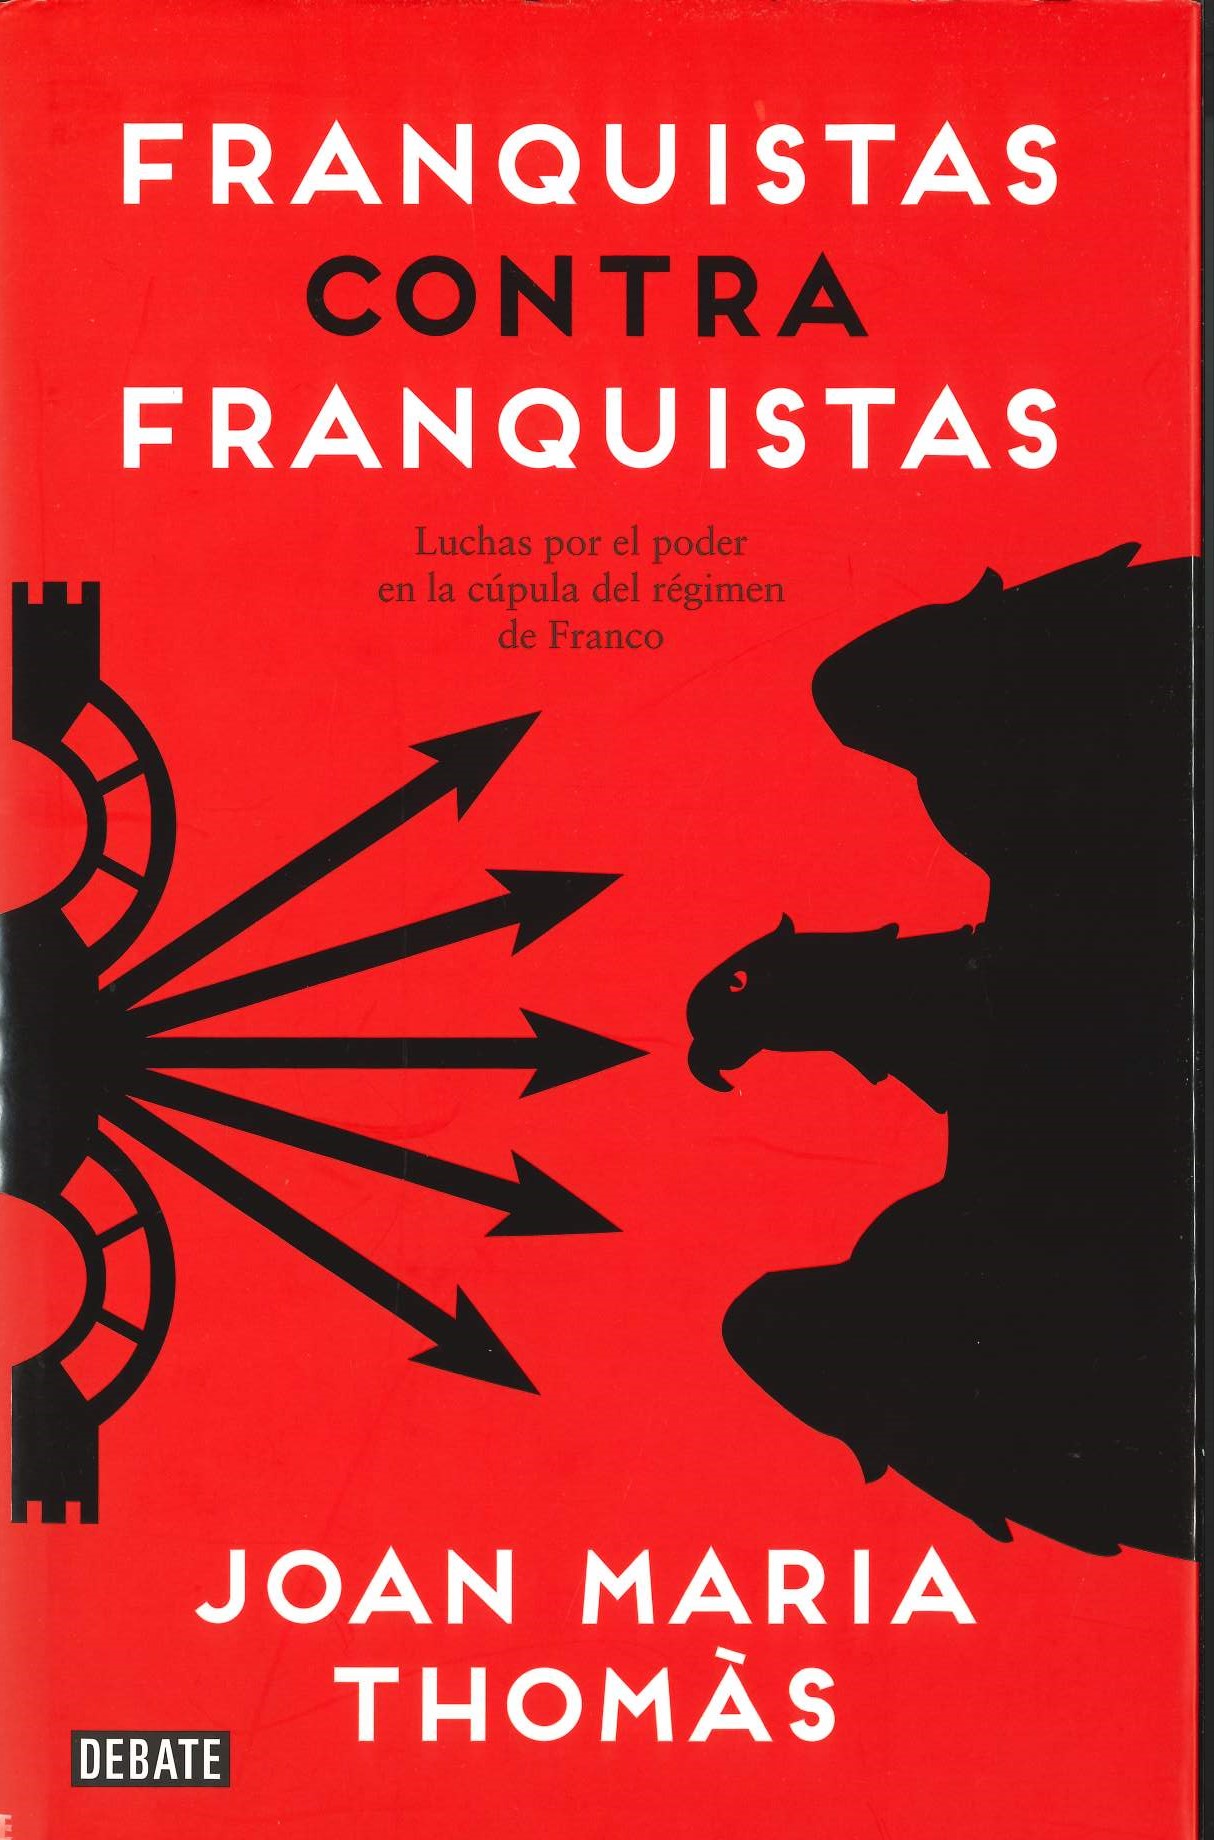 Imagen de portada del libro Franquistas contra franquistas